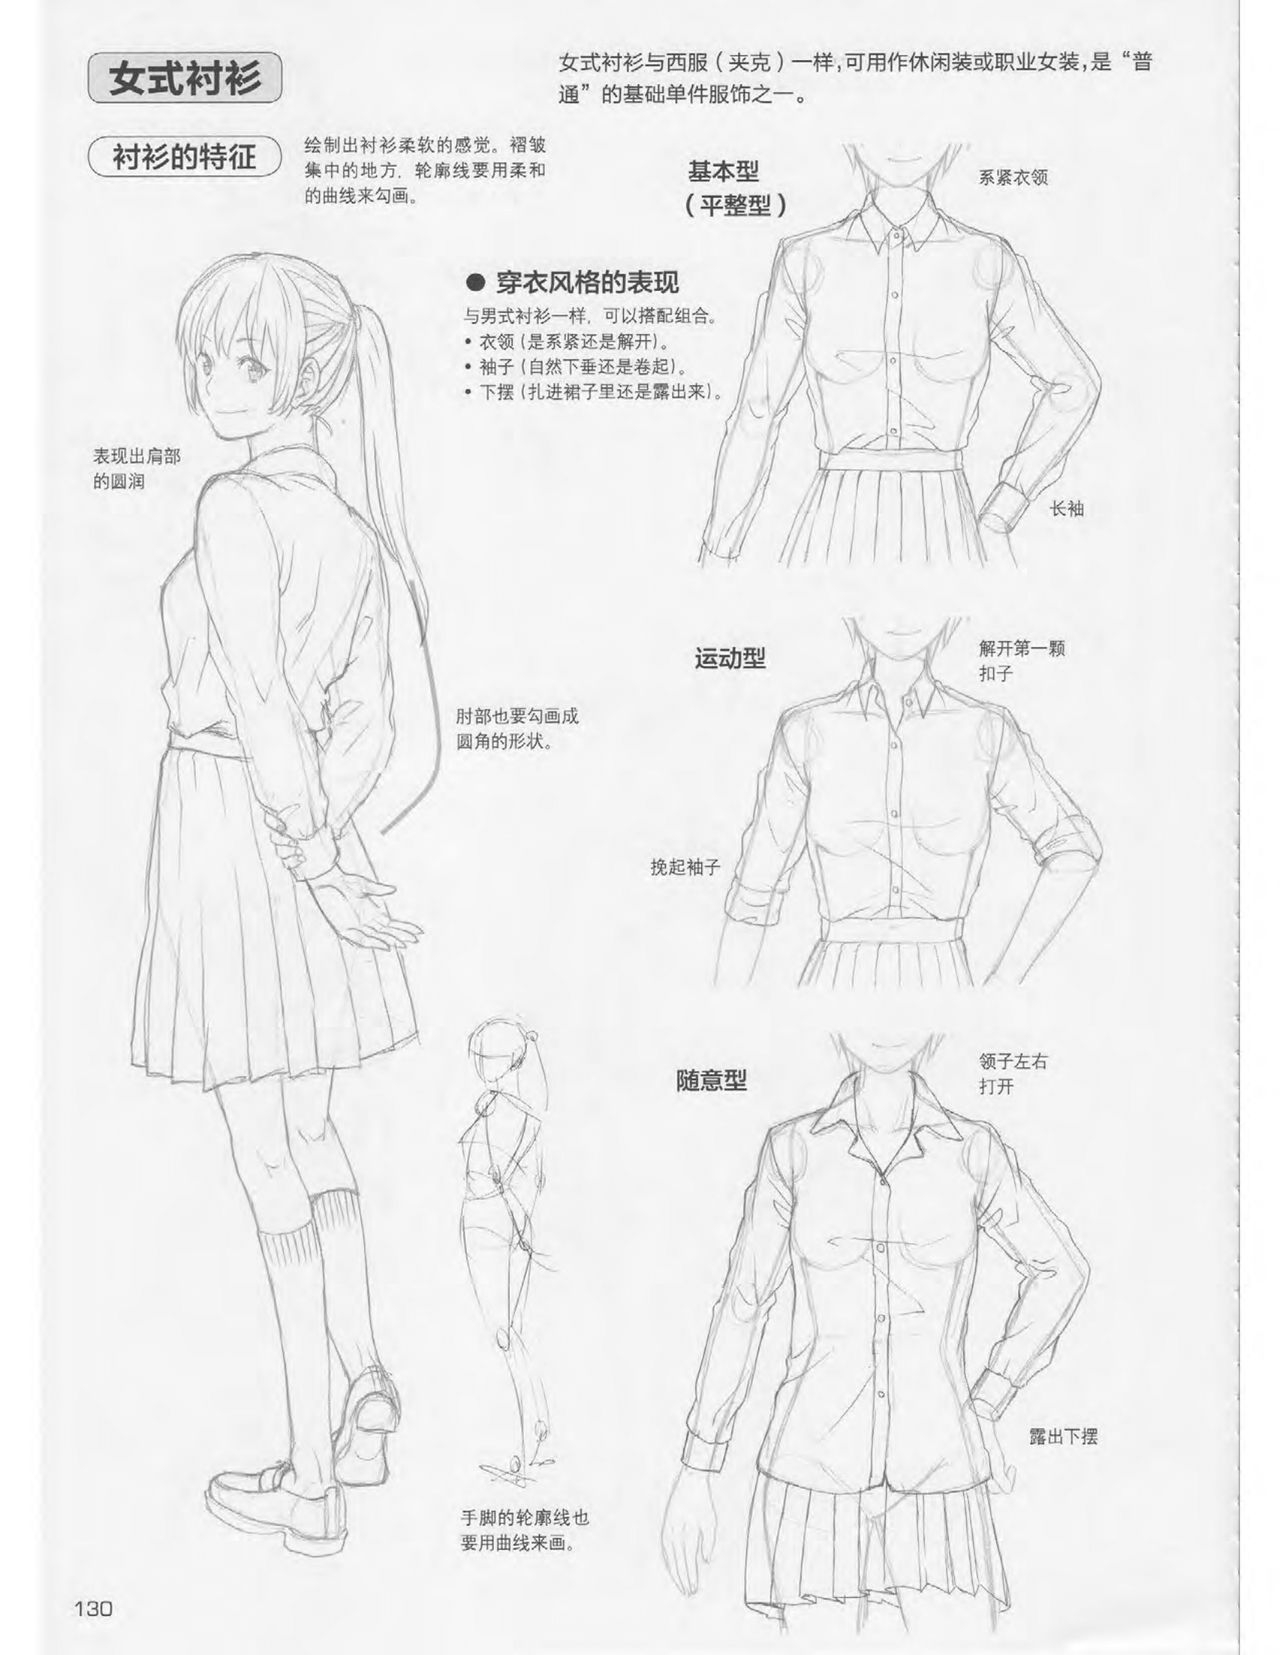 Japanese Manga Master Lecture 3: Lin Akira and Kakumaru Maru Talk About Glamorous Character Modeling 129